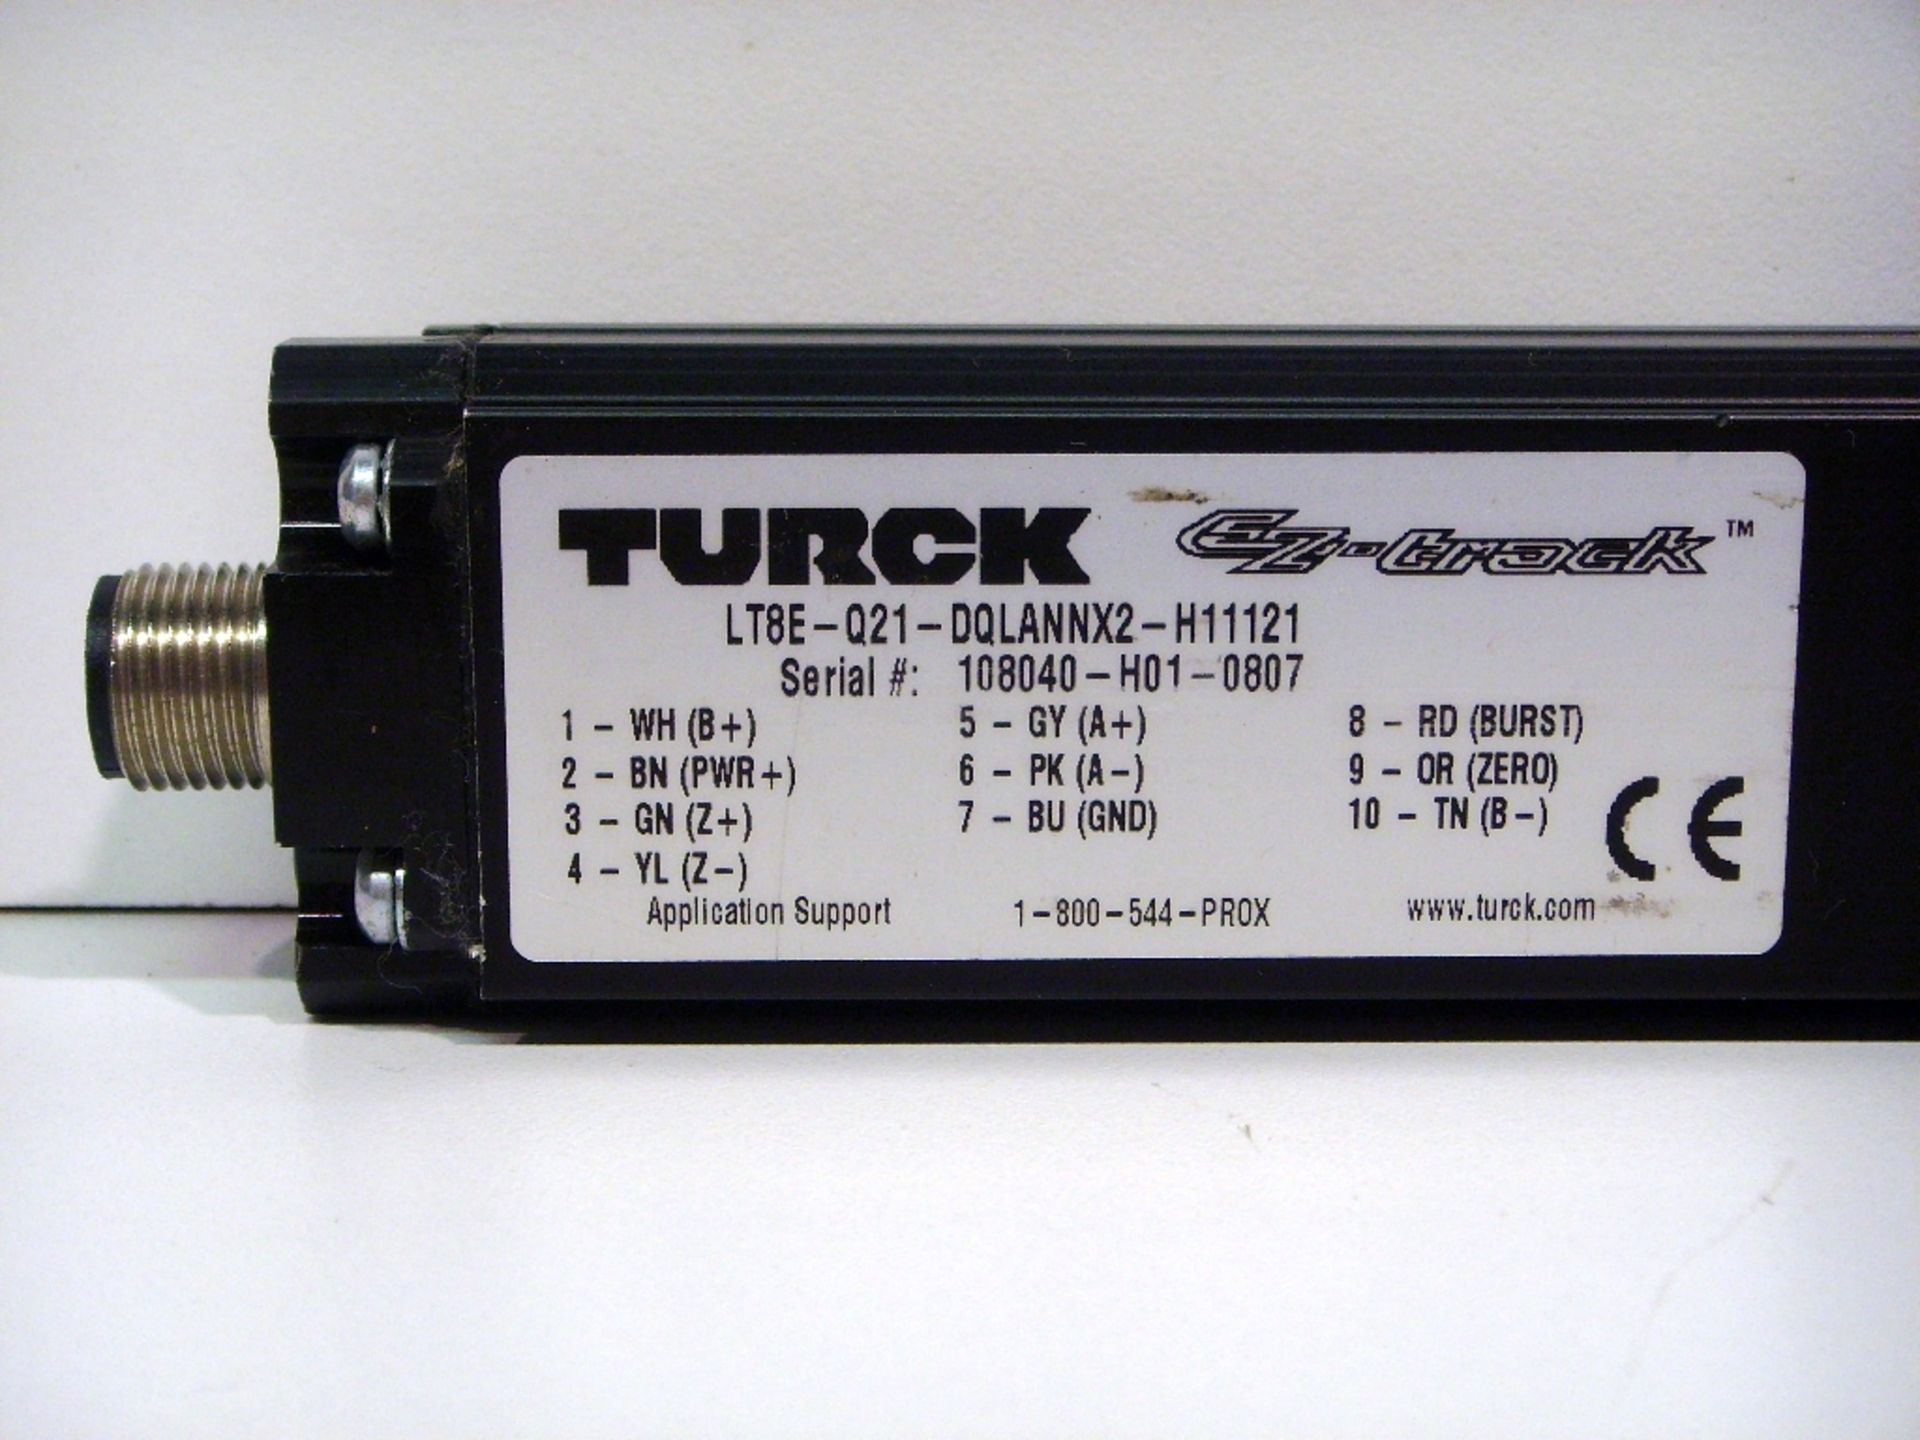 Turck LT8E-Q21-DQLANNX2-H11121 EZ-Track Traducer - Image 2 of 2